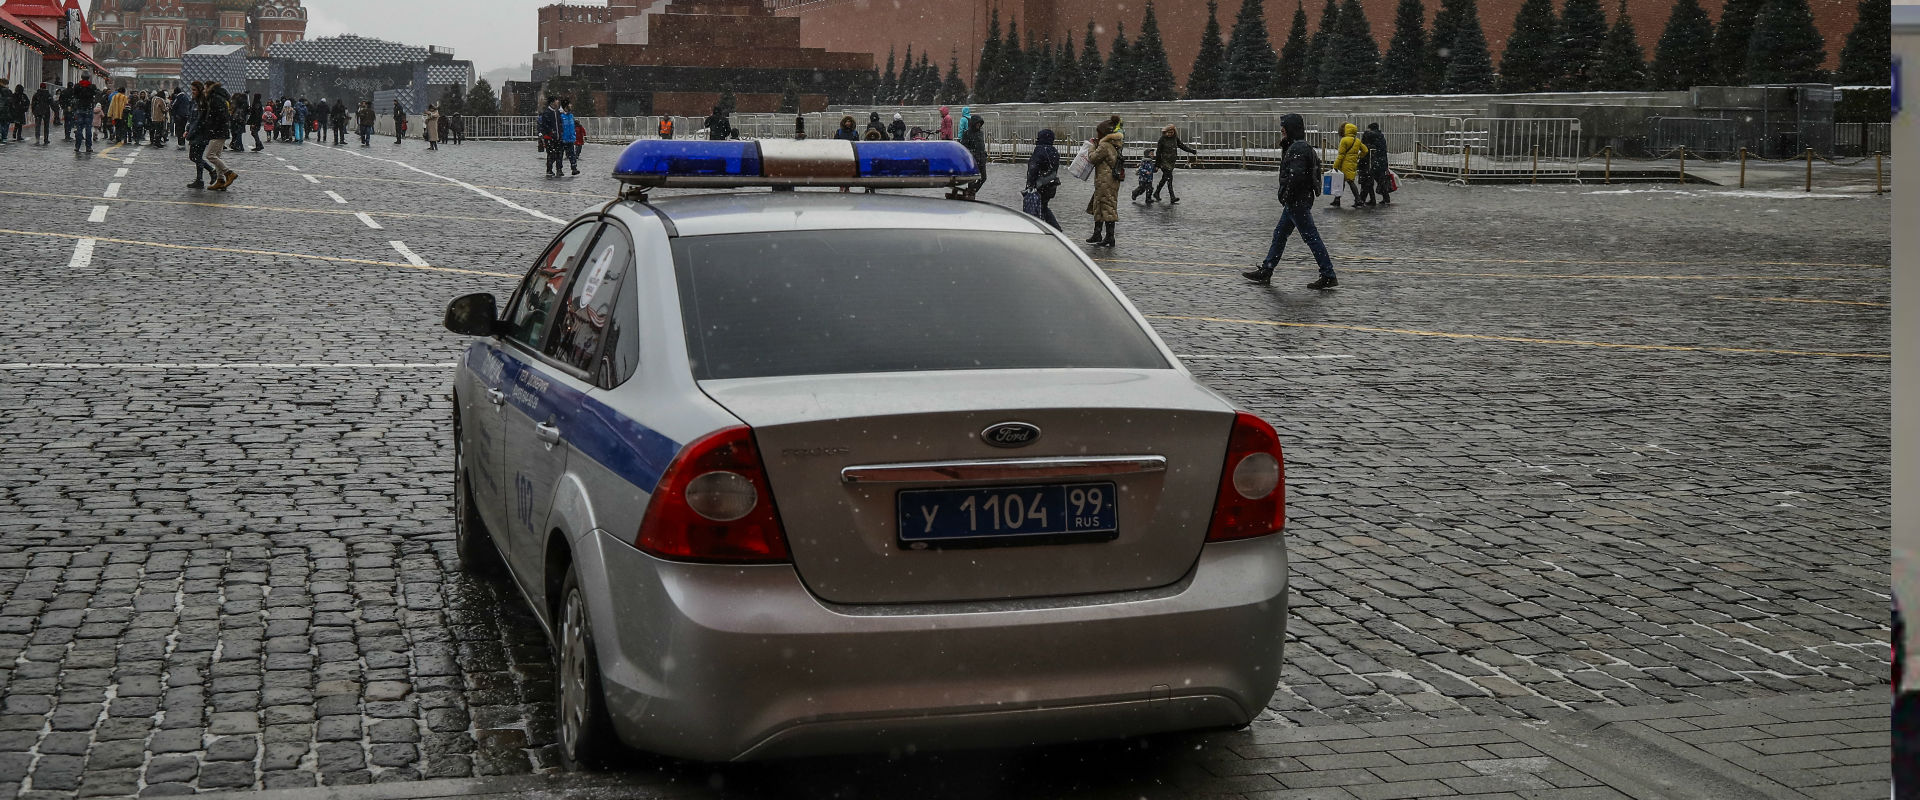 משטרה במוסקבה (ארכיון)